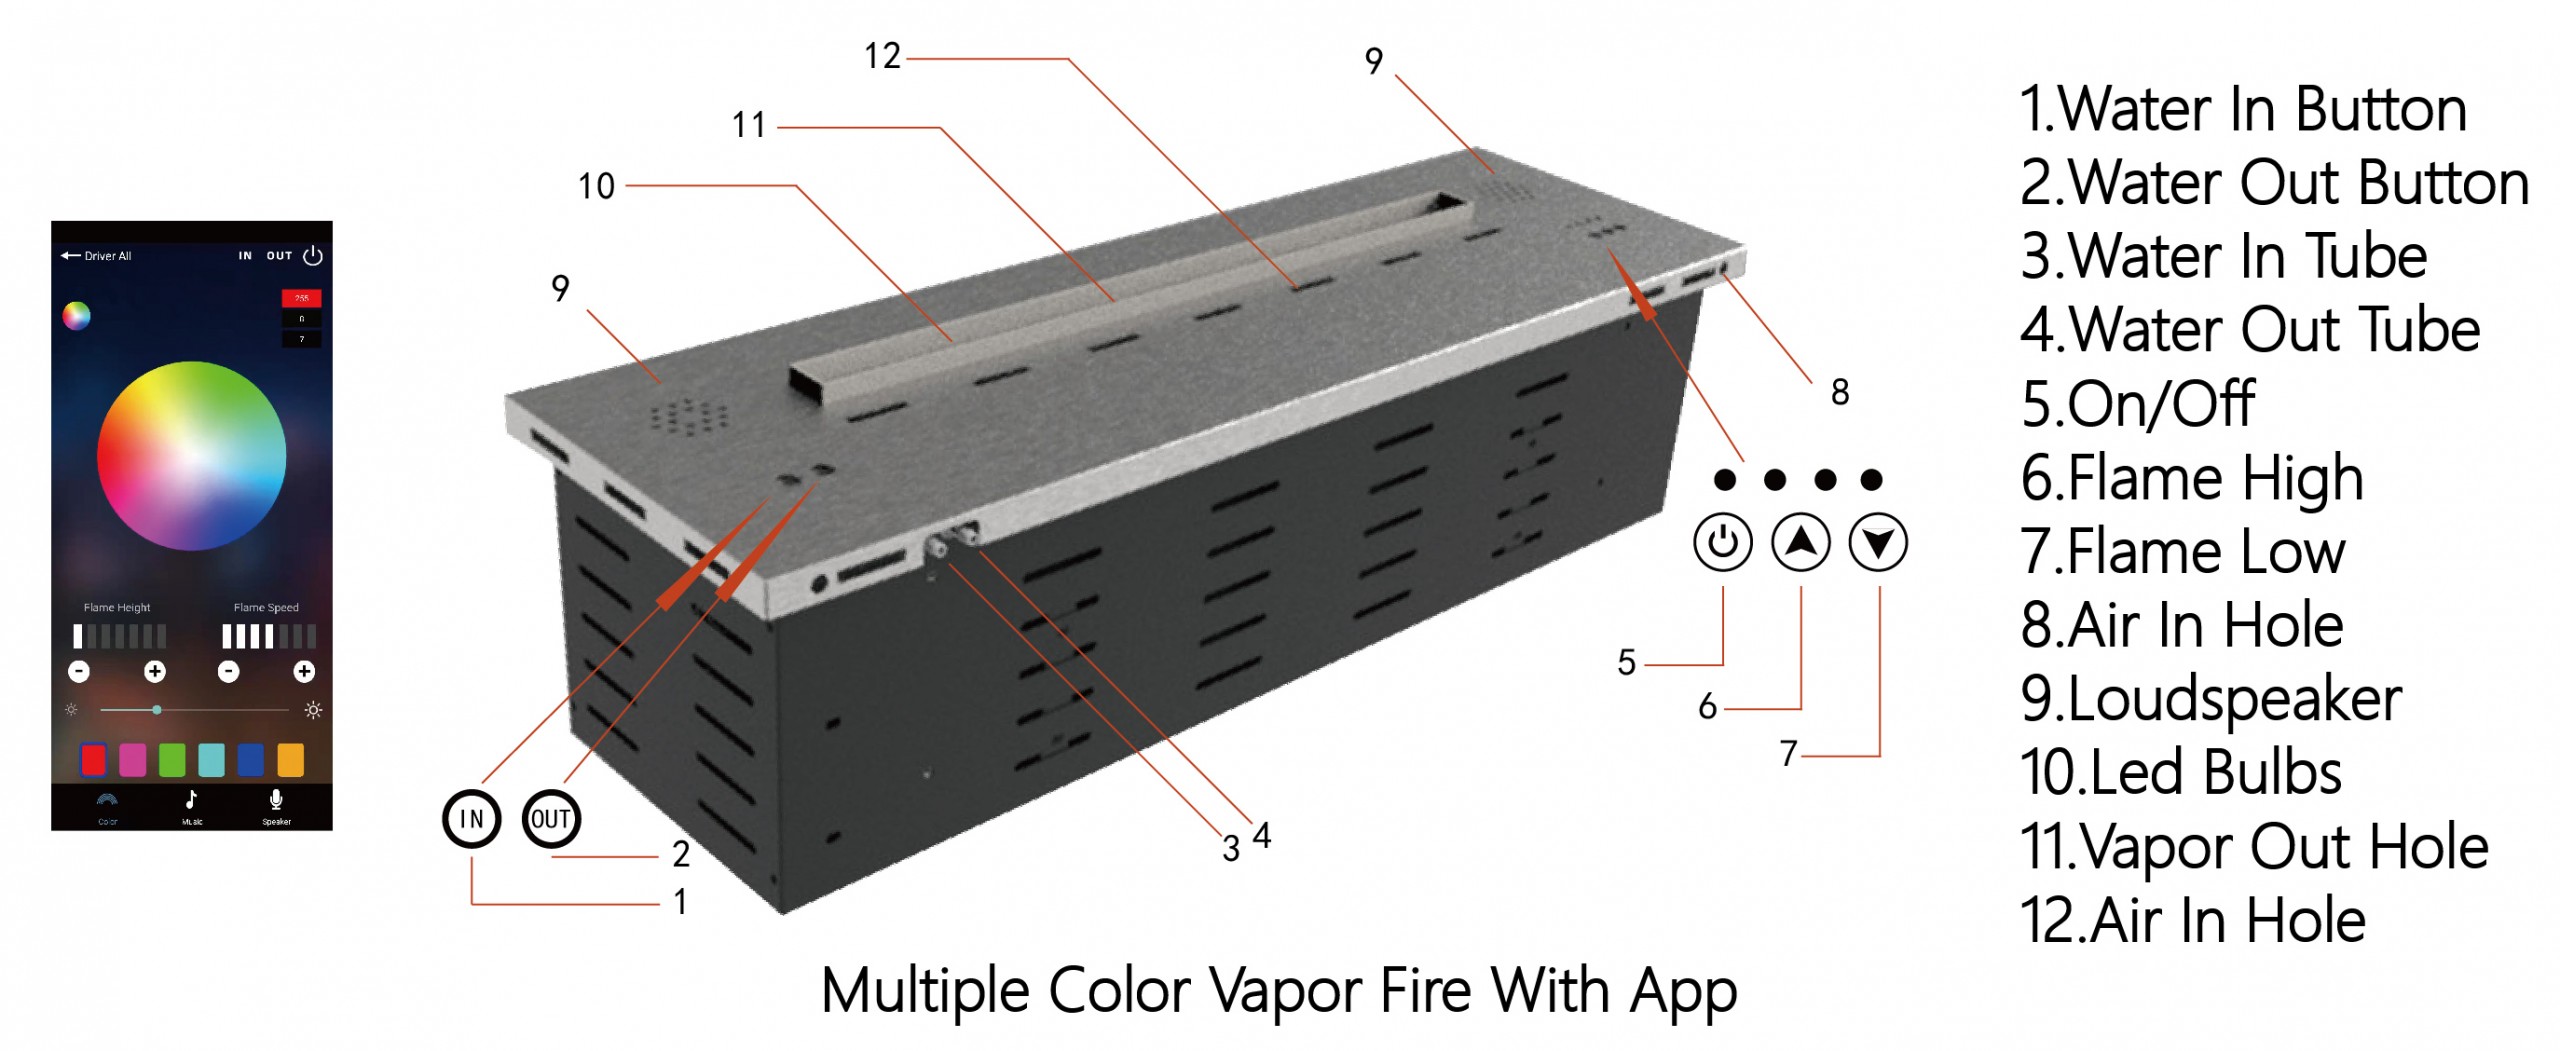 Benefits of Water 3D vapor steam fireplace With APP-Art-fire